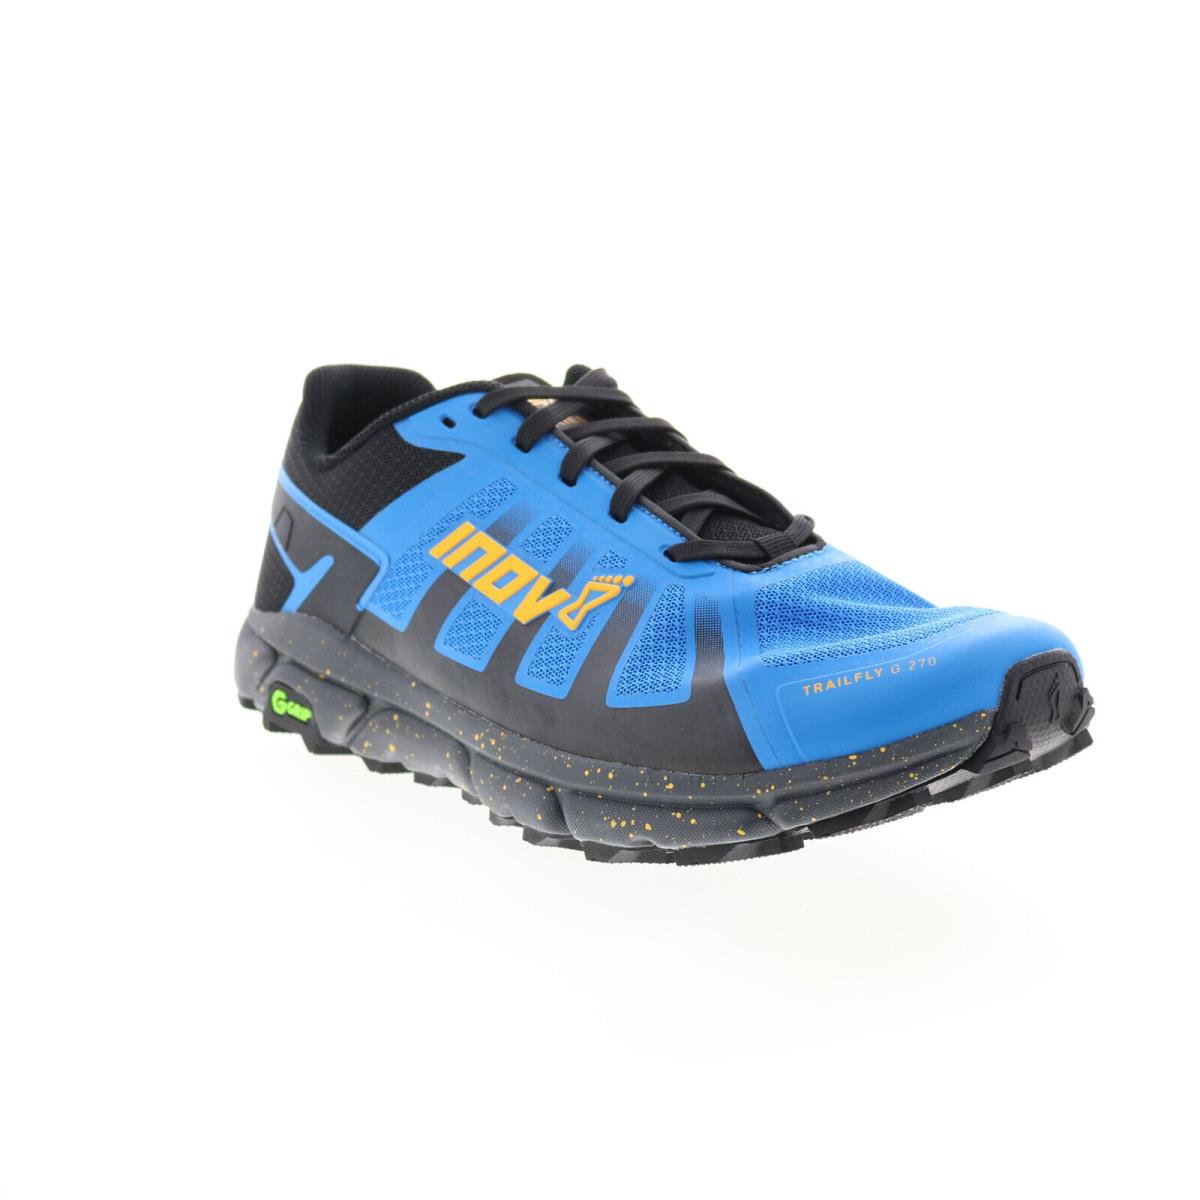 Inov-8 Trailfly G 270 001058-BLNE Mens Blue Canvas Athletic Hiking Shoes